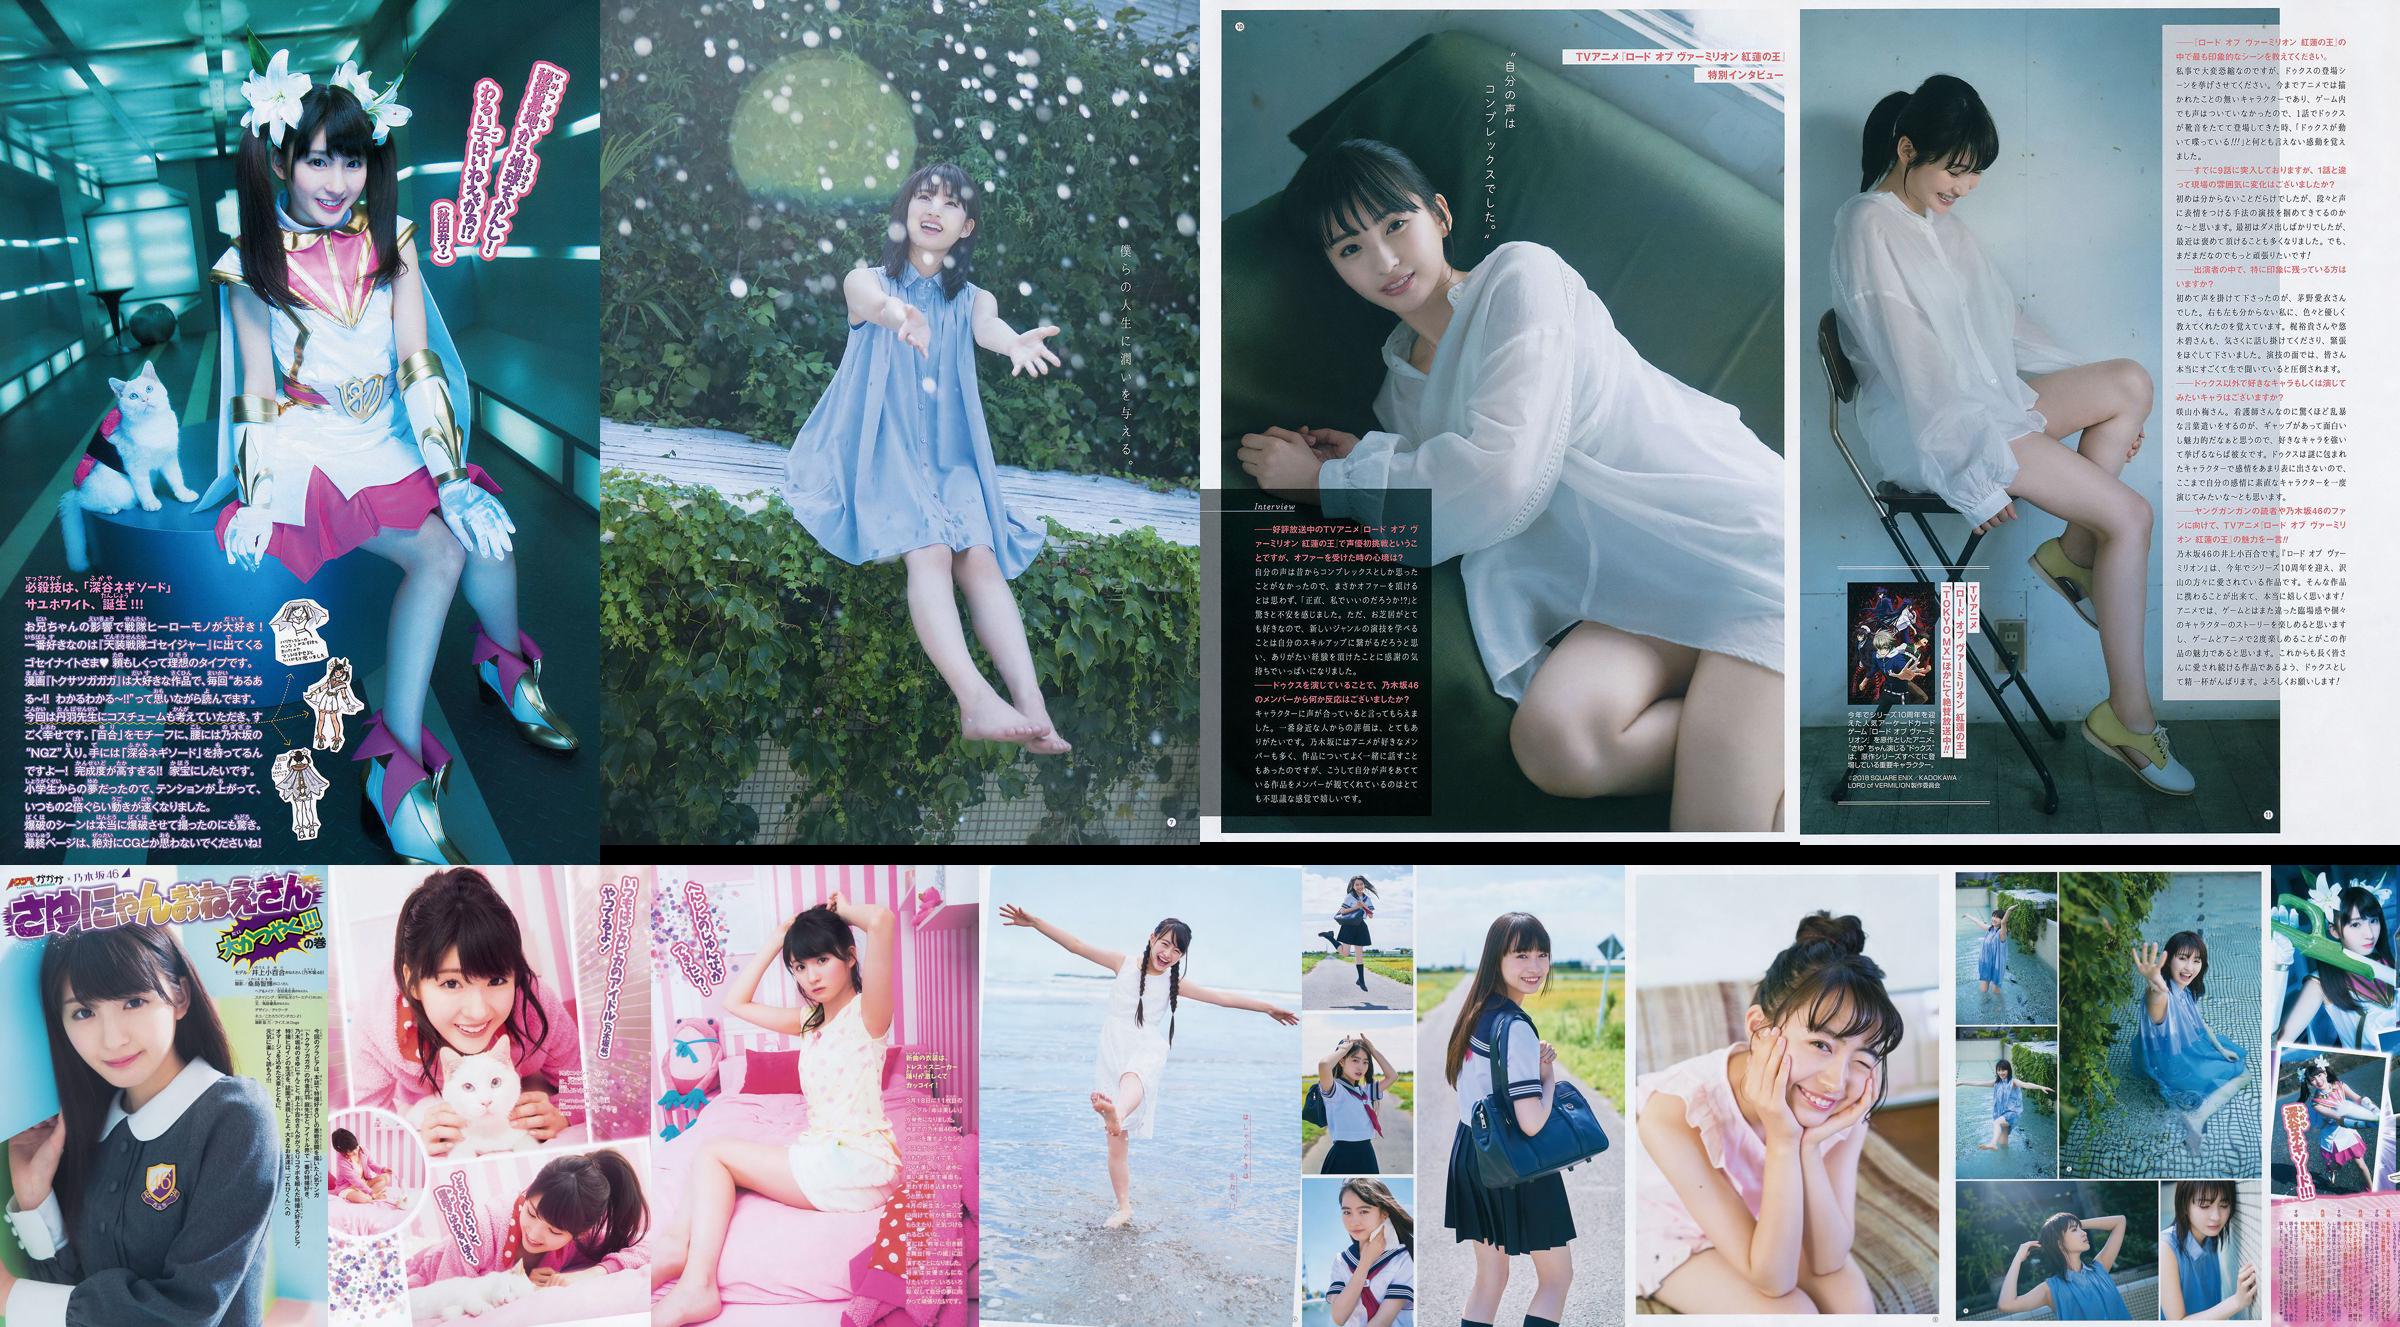 [Young Gangan] Sayuri Inoue Het originele zand 2018 No.18 Photo Magazine No.498e56 Pagina 7